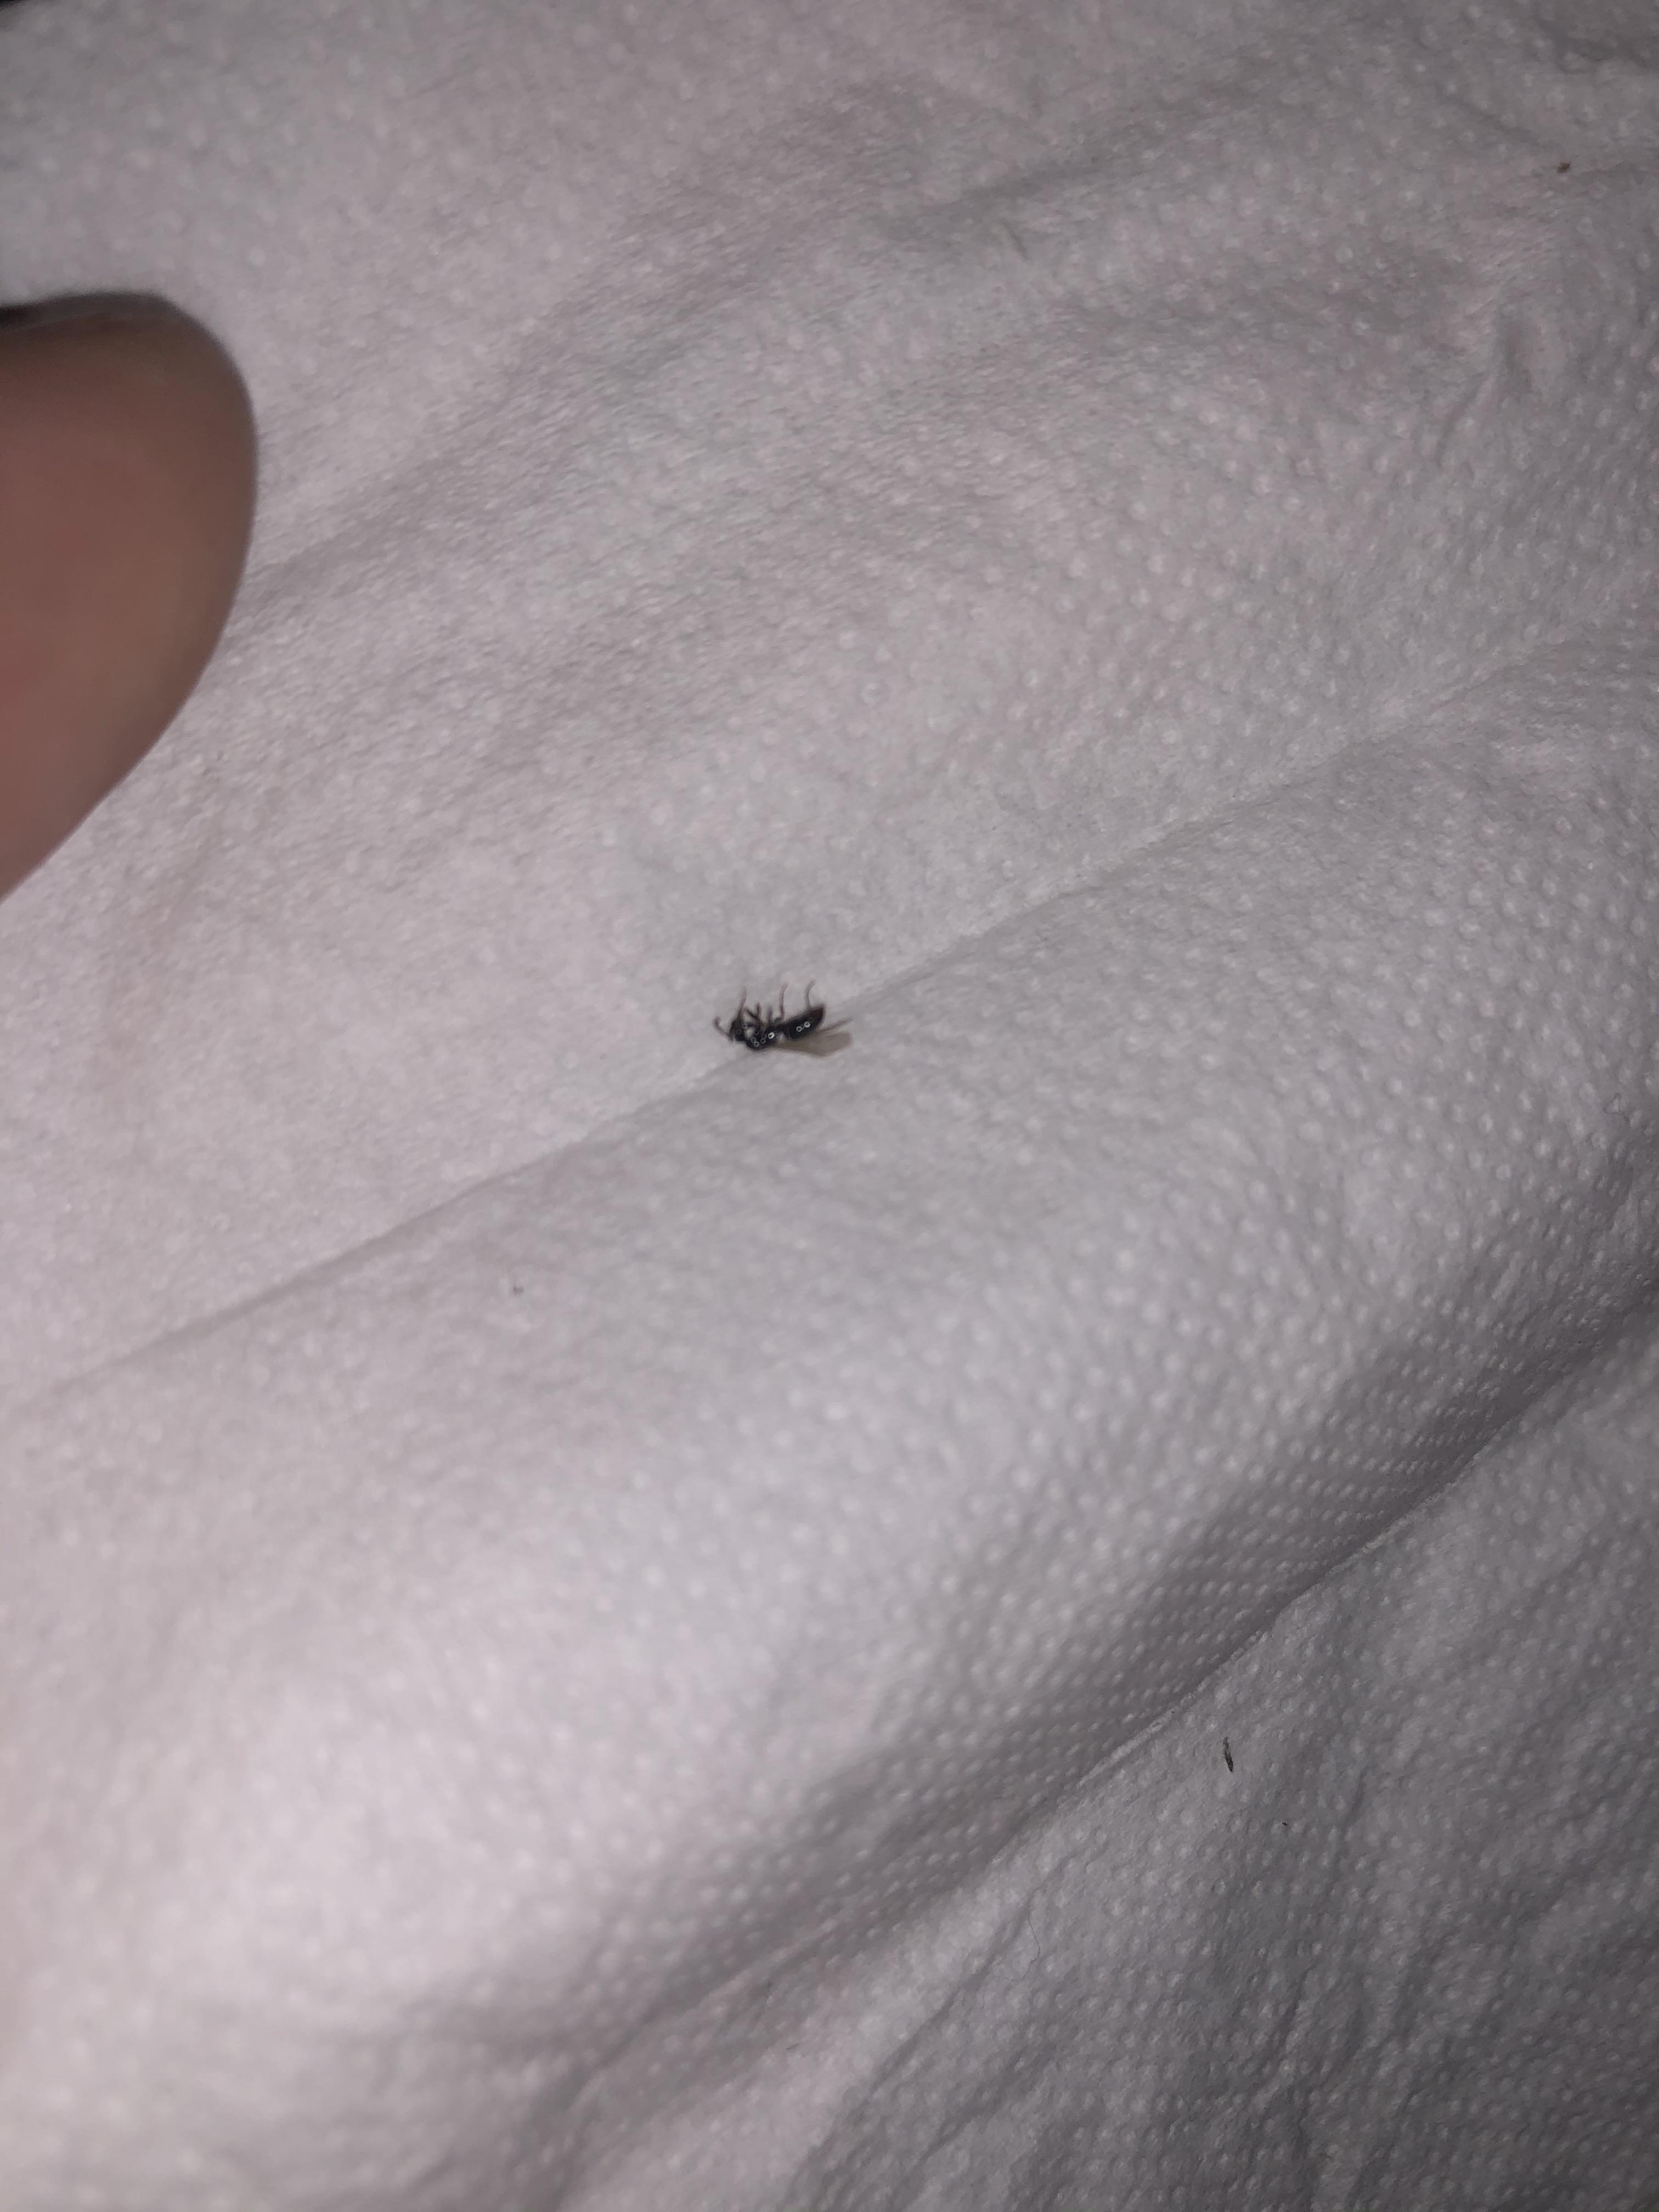 被会飞的黑色蚂蚁咬了 需要怎么处理?